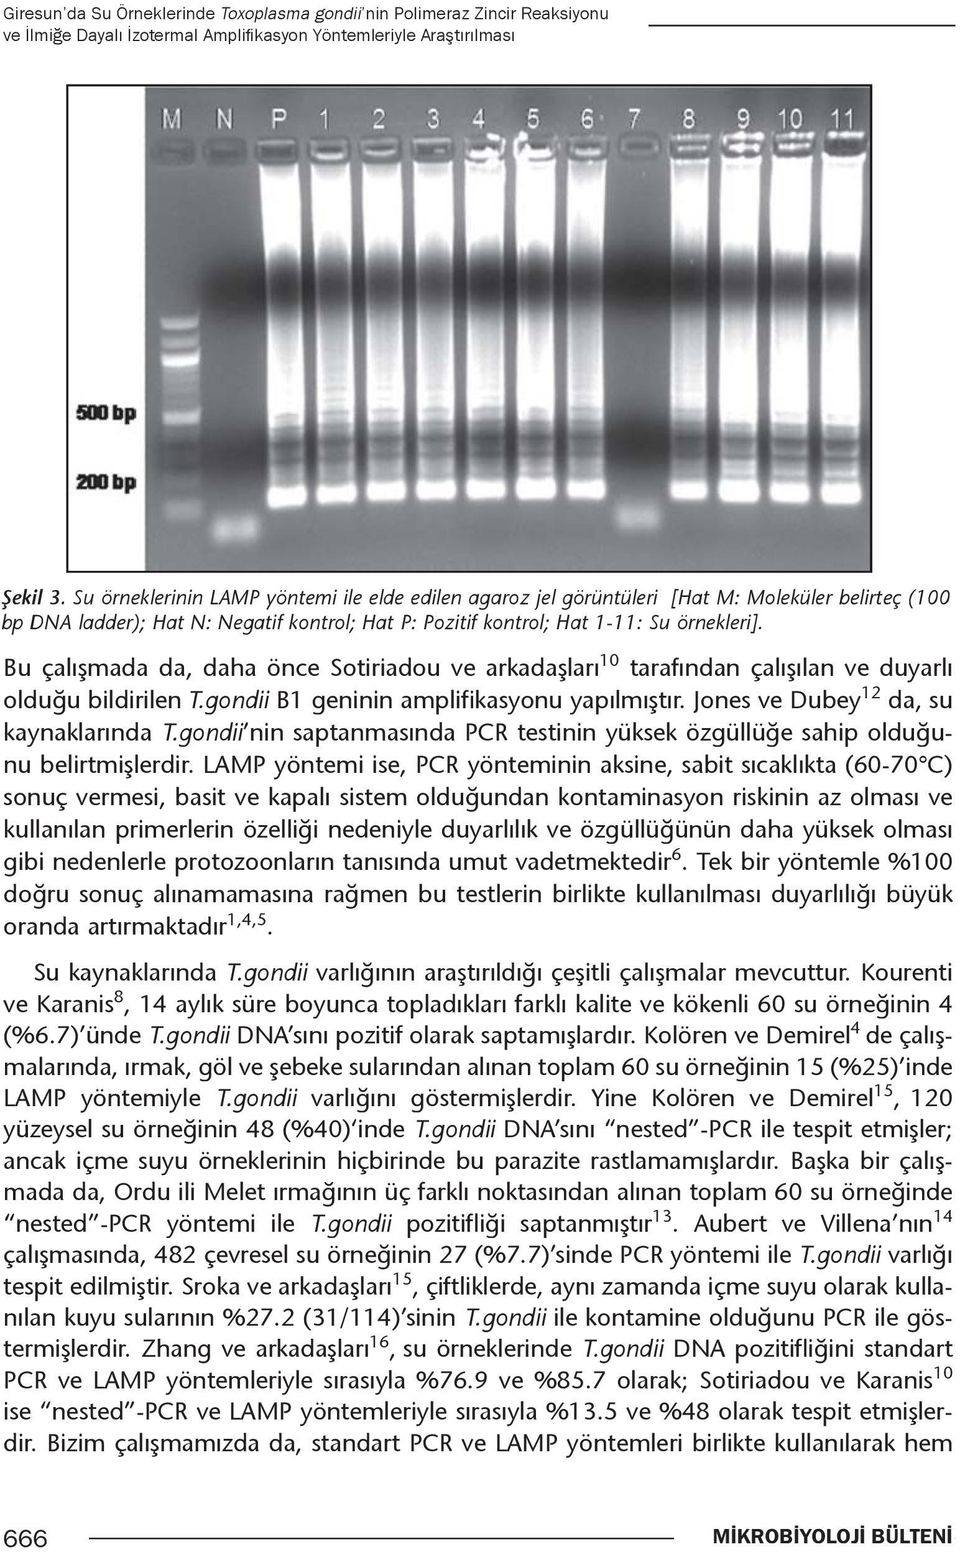 Bu çalışmada da, daha önce Sotiriadou ve arkadaşları 10 tarafından çalışılan ve duyarlı 12 olduğu bildirilen T.gondii i B1 geninin amplifikasyonu yapılmıştır. Jones ve Dubey da, su kaynaklarında T.